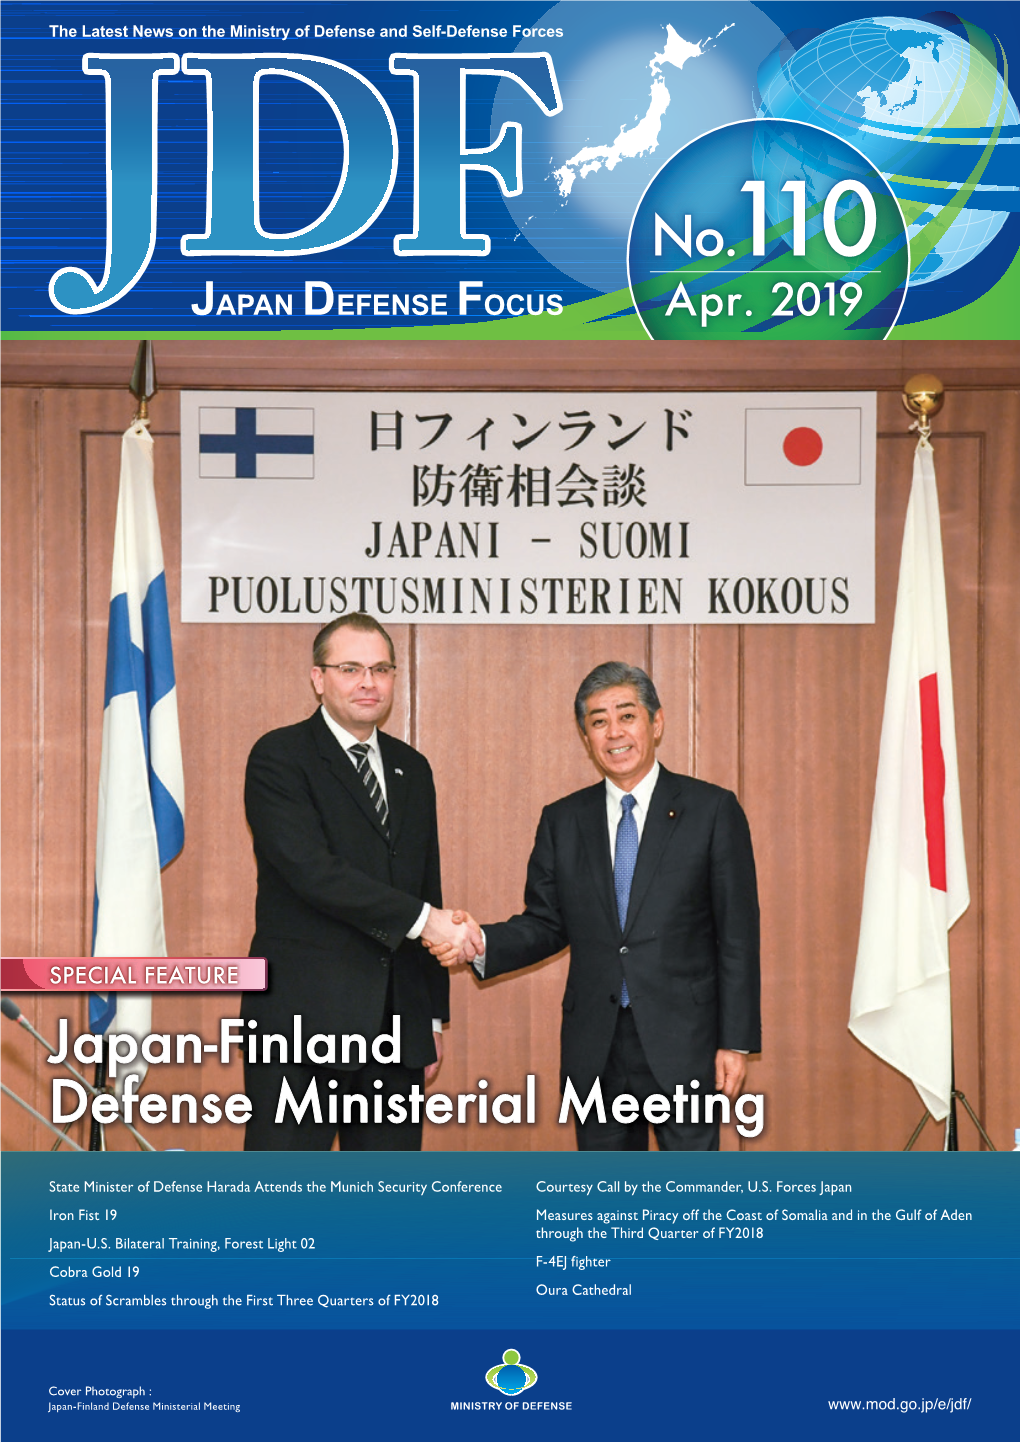 Japan Defense Focus No.110